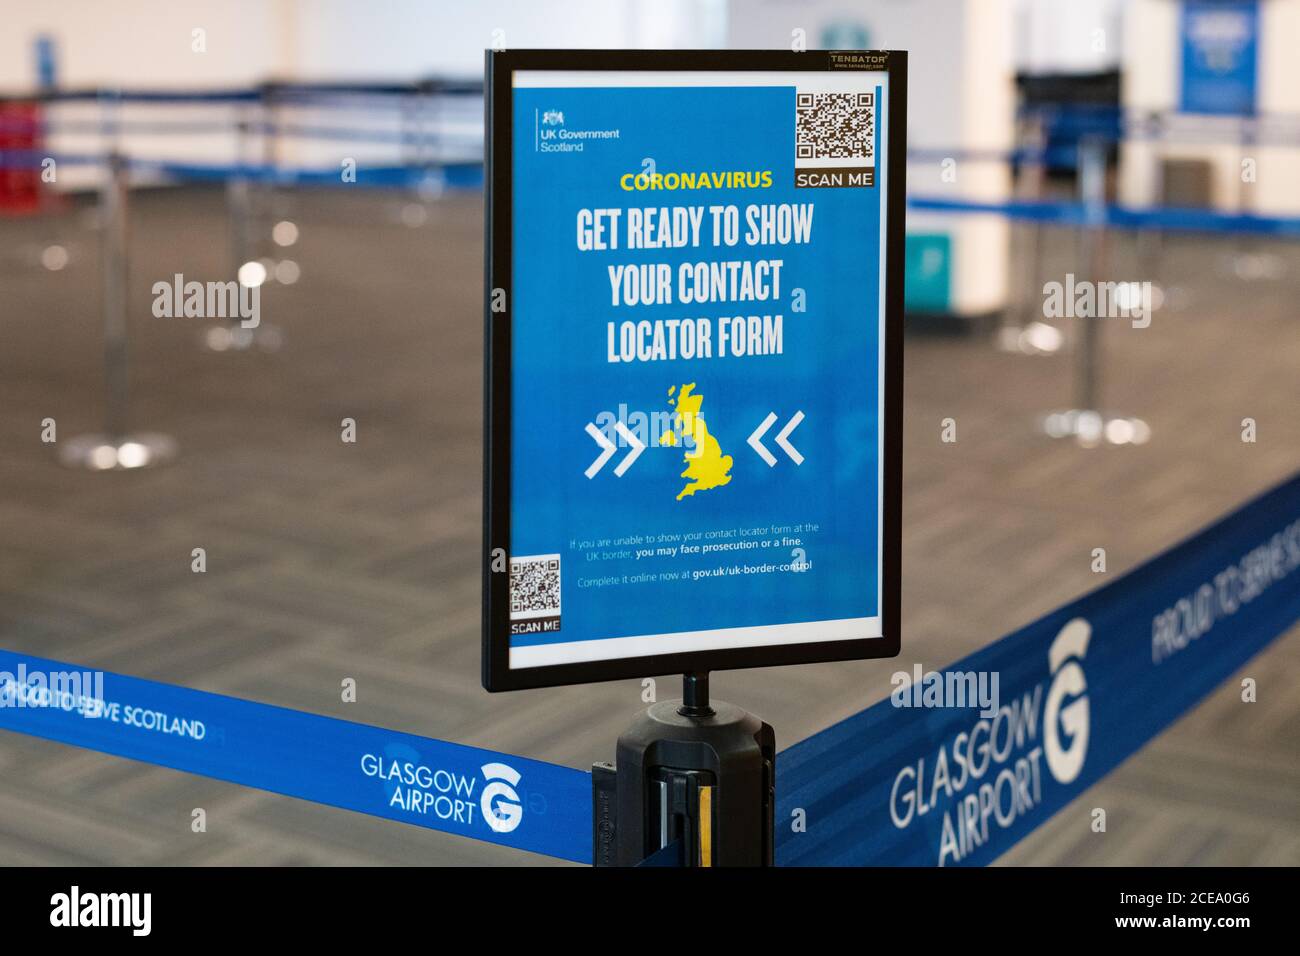 Coronavirus-Grenzkontrollschild am Flughafen Glasgow, Schottland, Großbritannien erinnert Personen, die in Großbritannien einreisen, daran, dass sie sich bereit machen, Ihr Kontaktsuchformular zu zeigen. Stockfoto